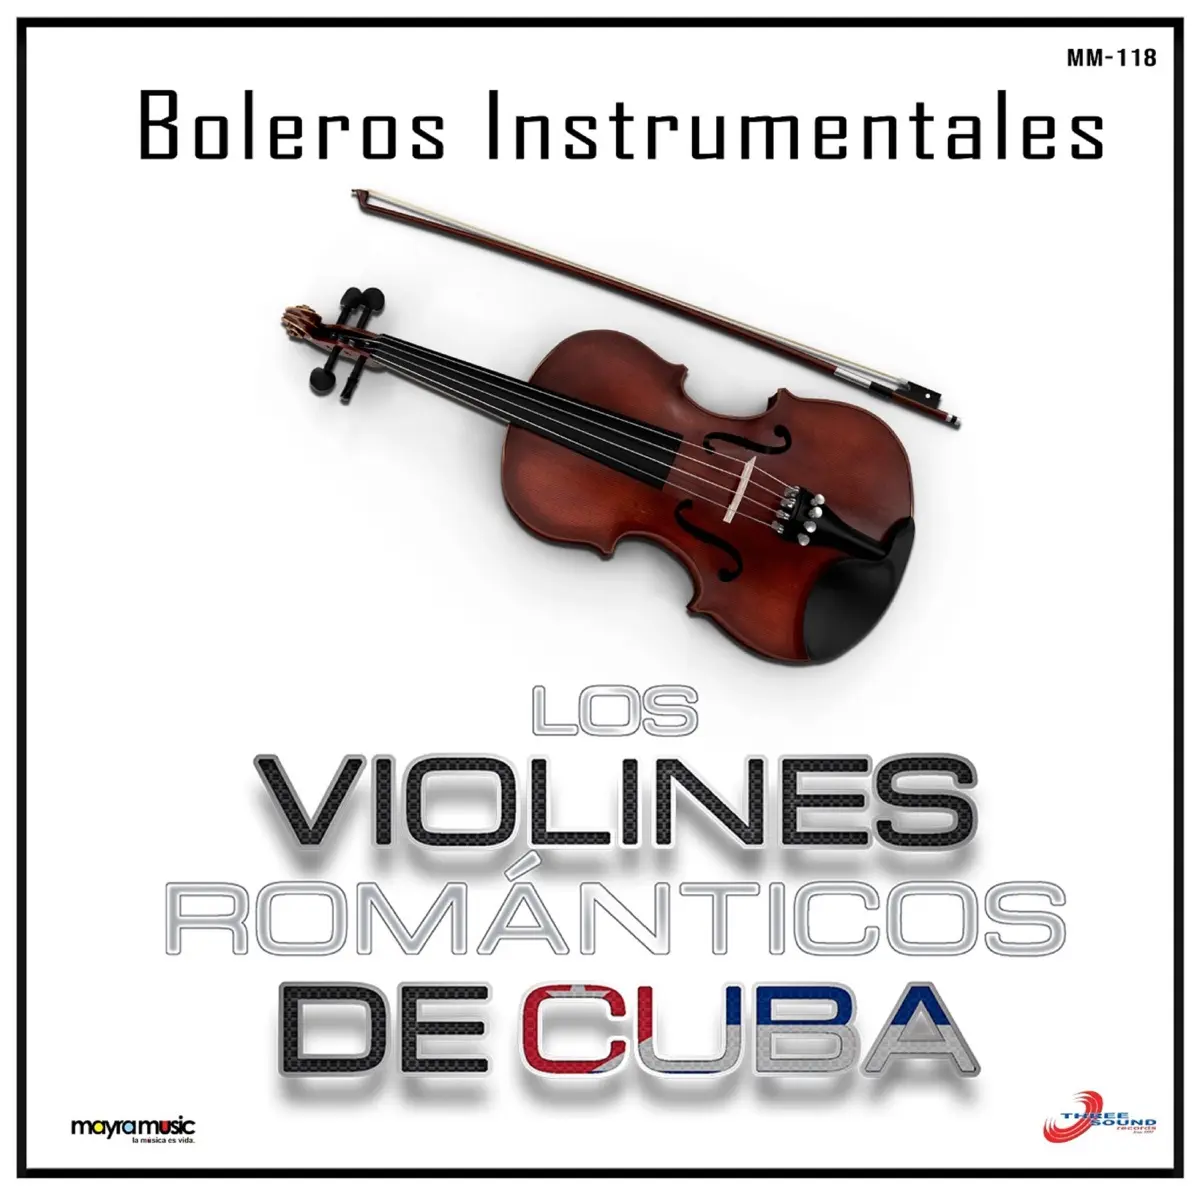 los violines romanticos boleros instrumentales - Cuáles son los mejores boleros